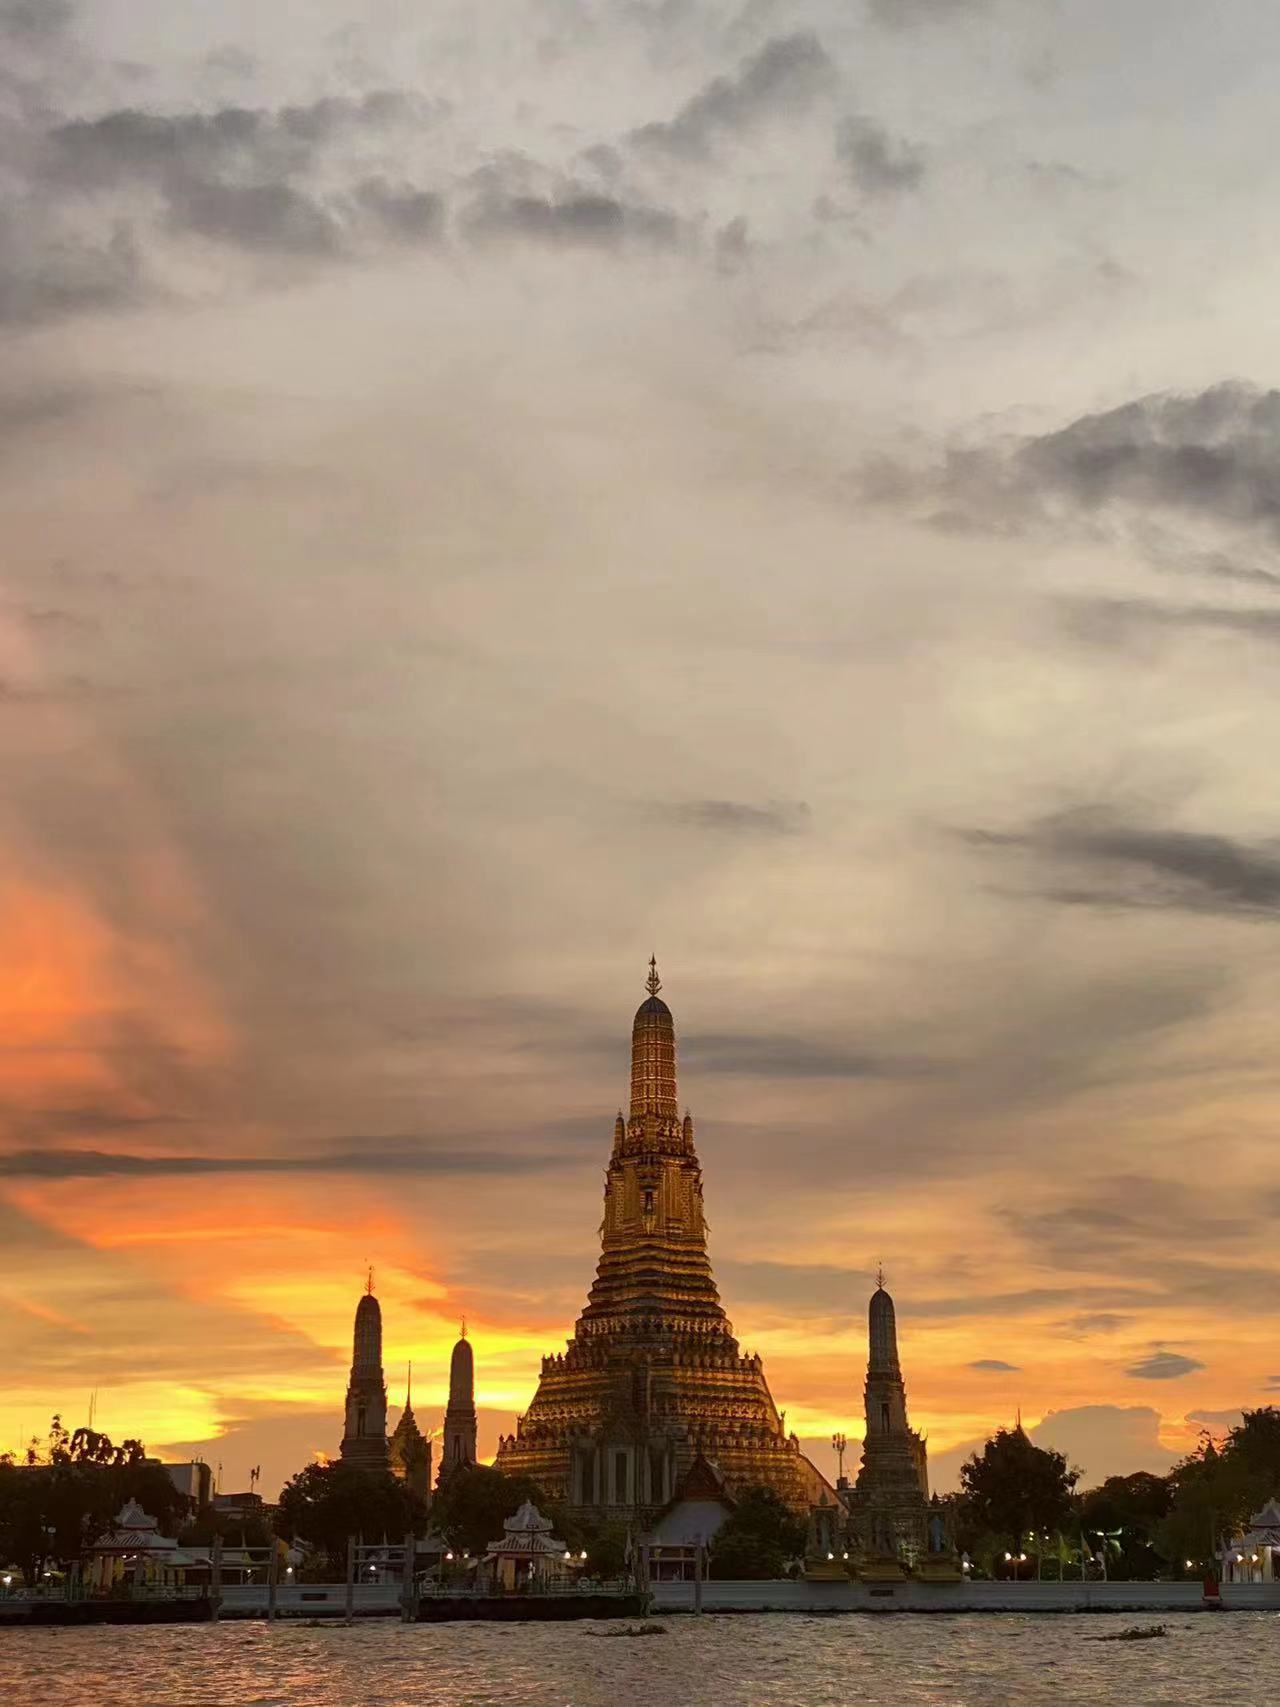 83.（泰国）Supakorn Chaiyaporntham《Temple of the Dawn》.jpg